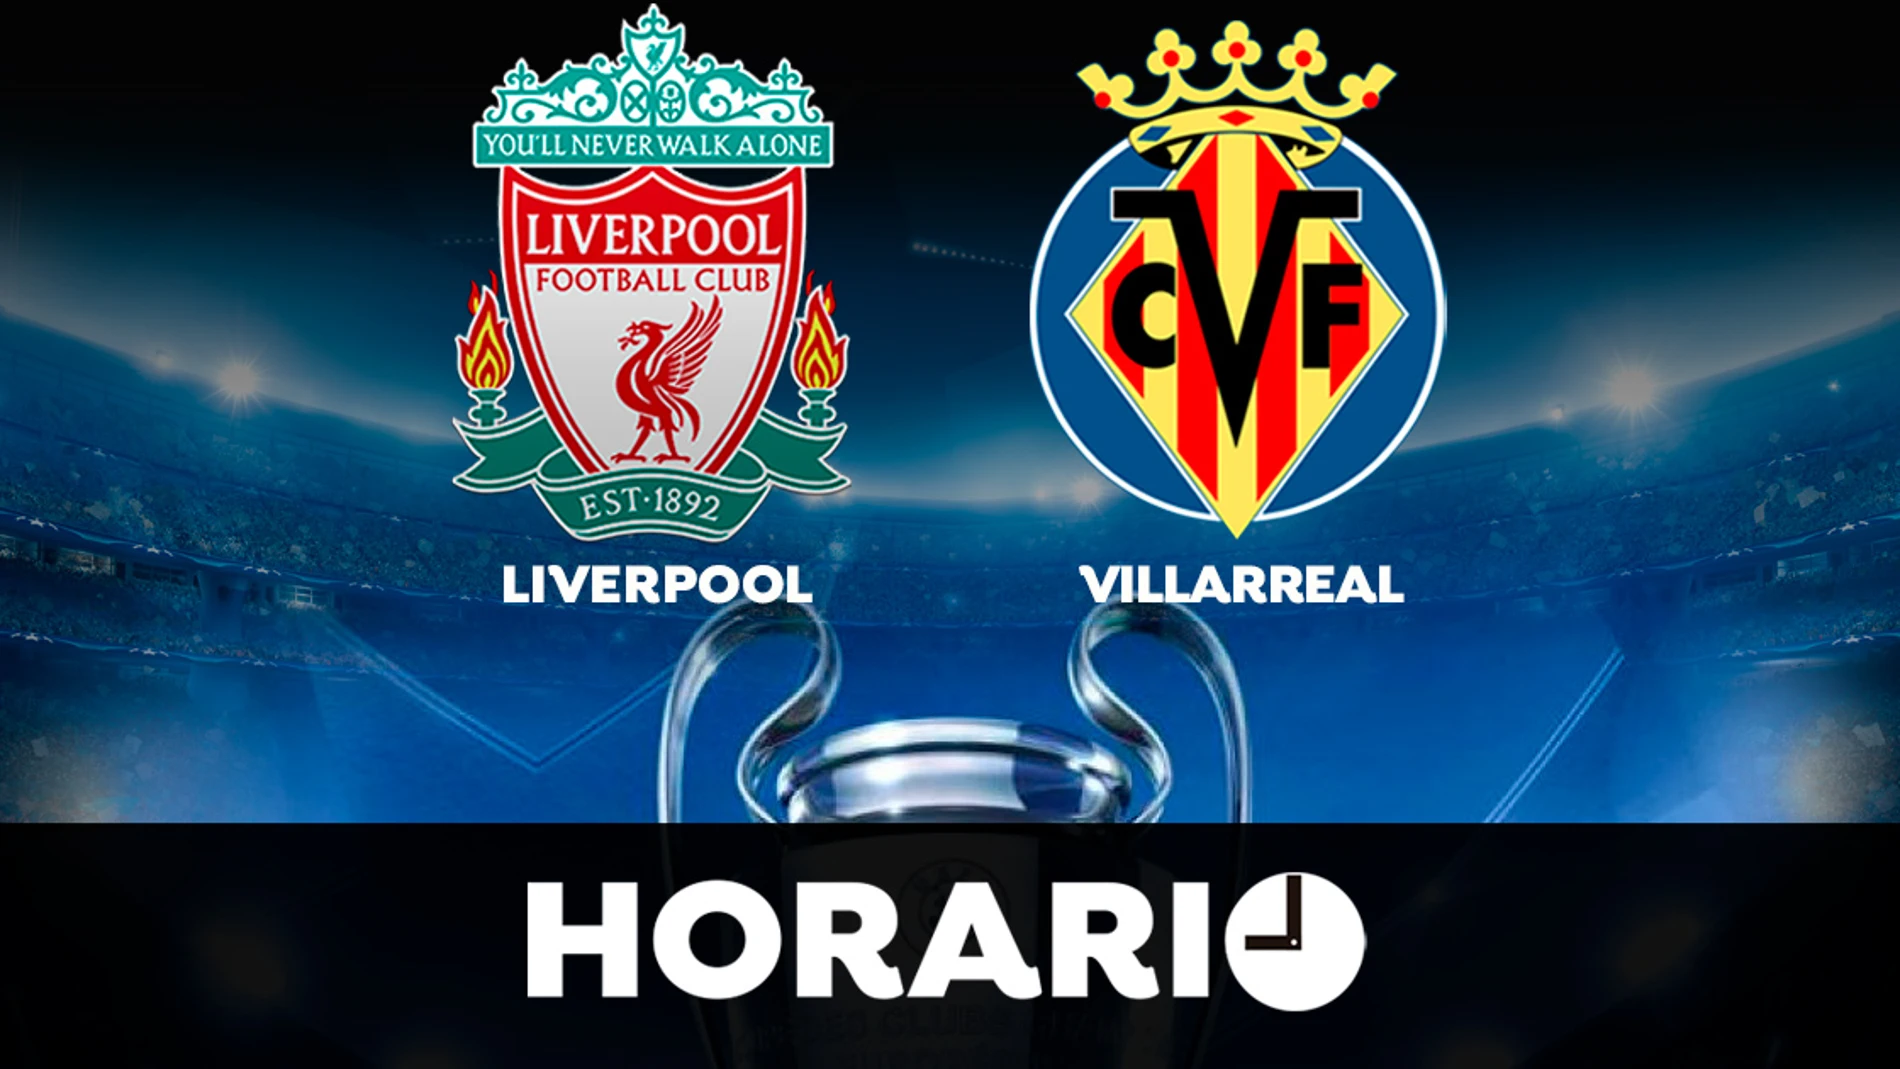 Liverpool - Villarreal: Horario y dónde ver el partido de semifinales de la Champions League